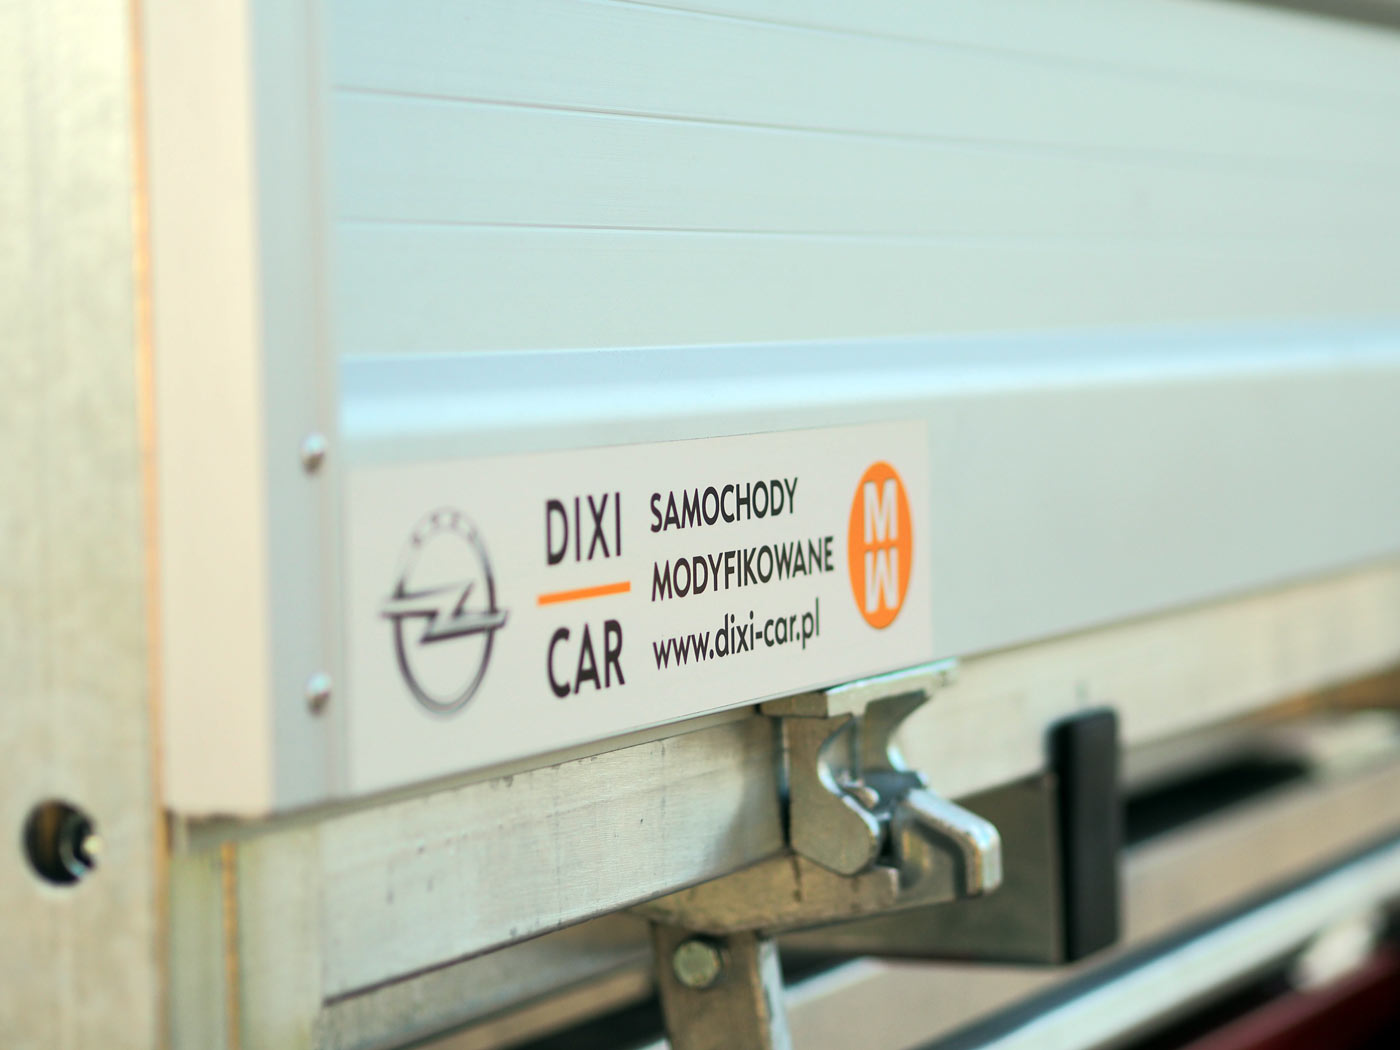 Samochody modyfikowane Dixi-Car naklejka na burcie